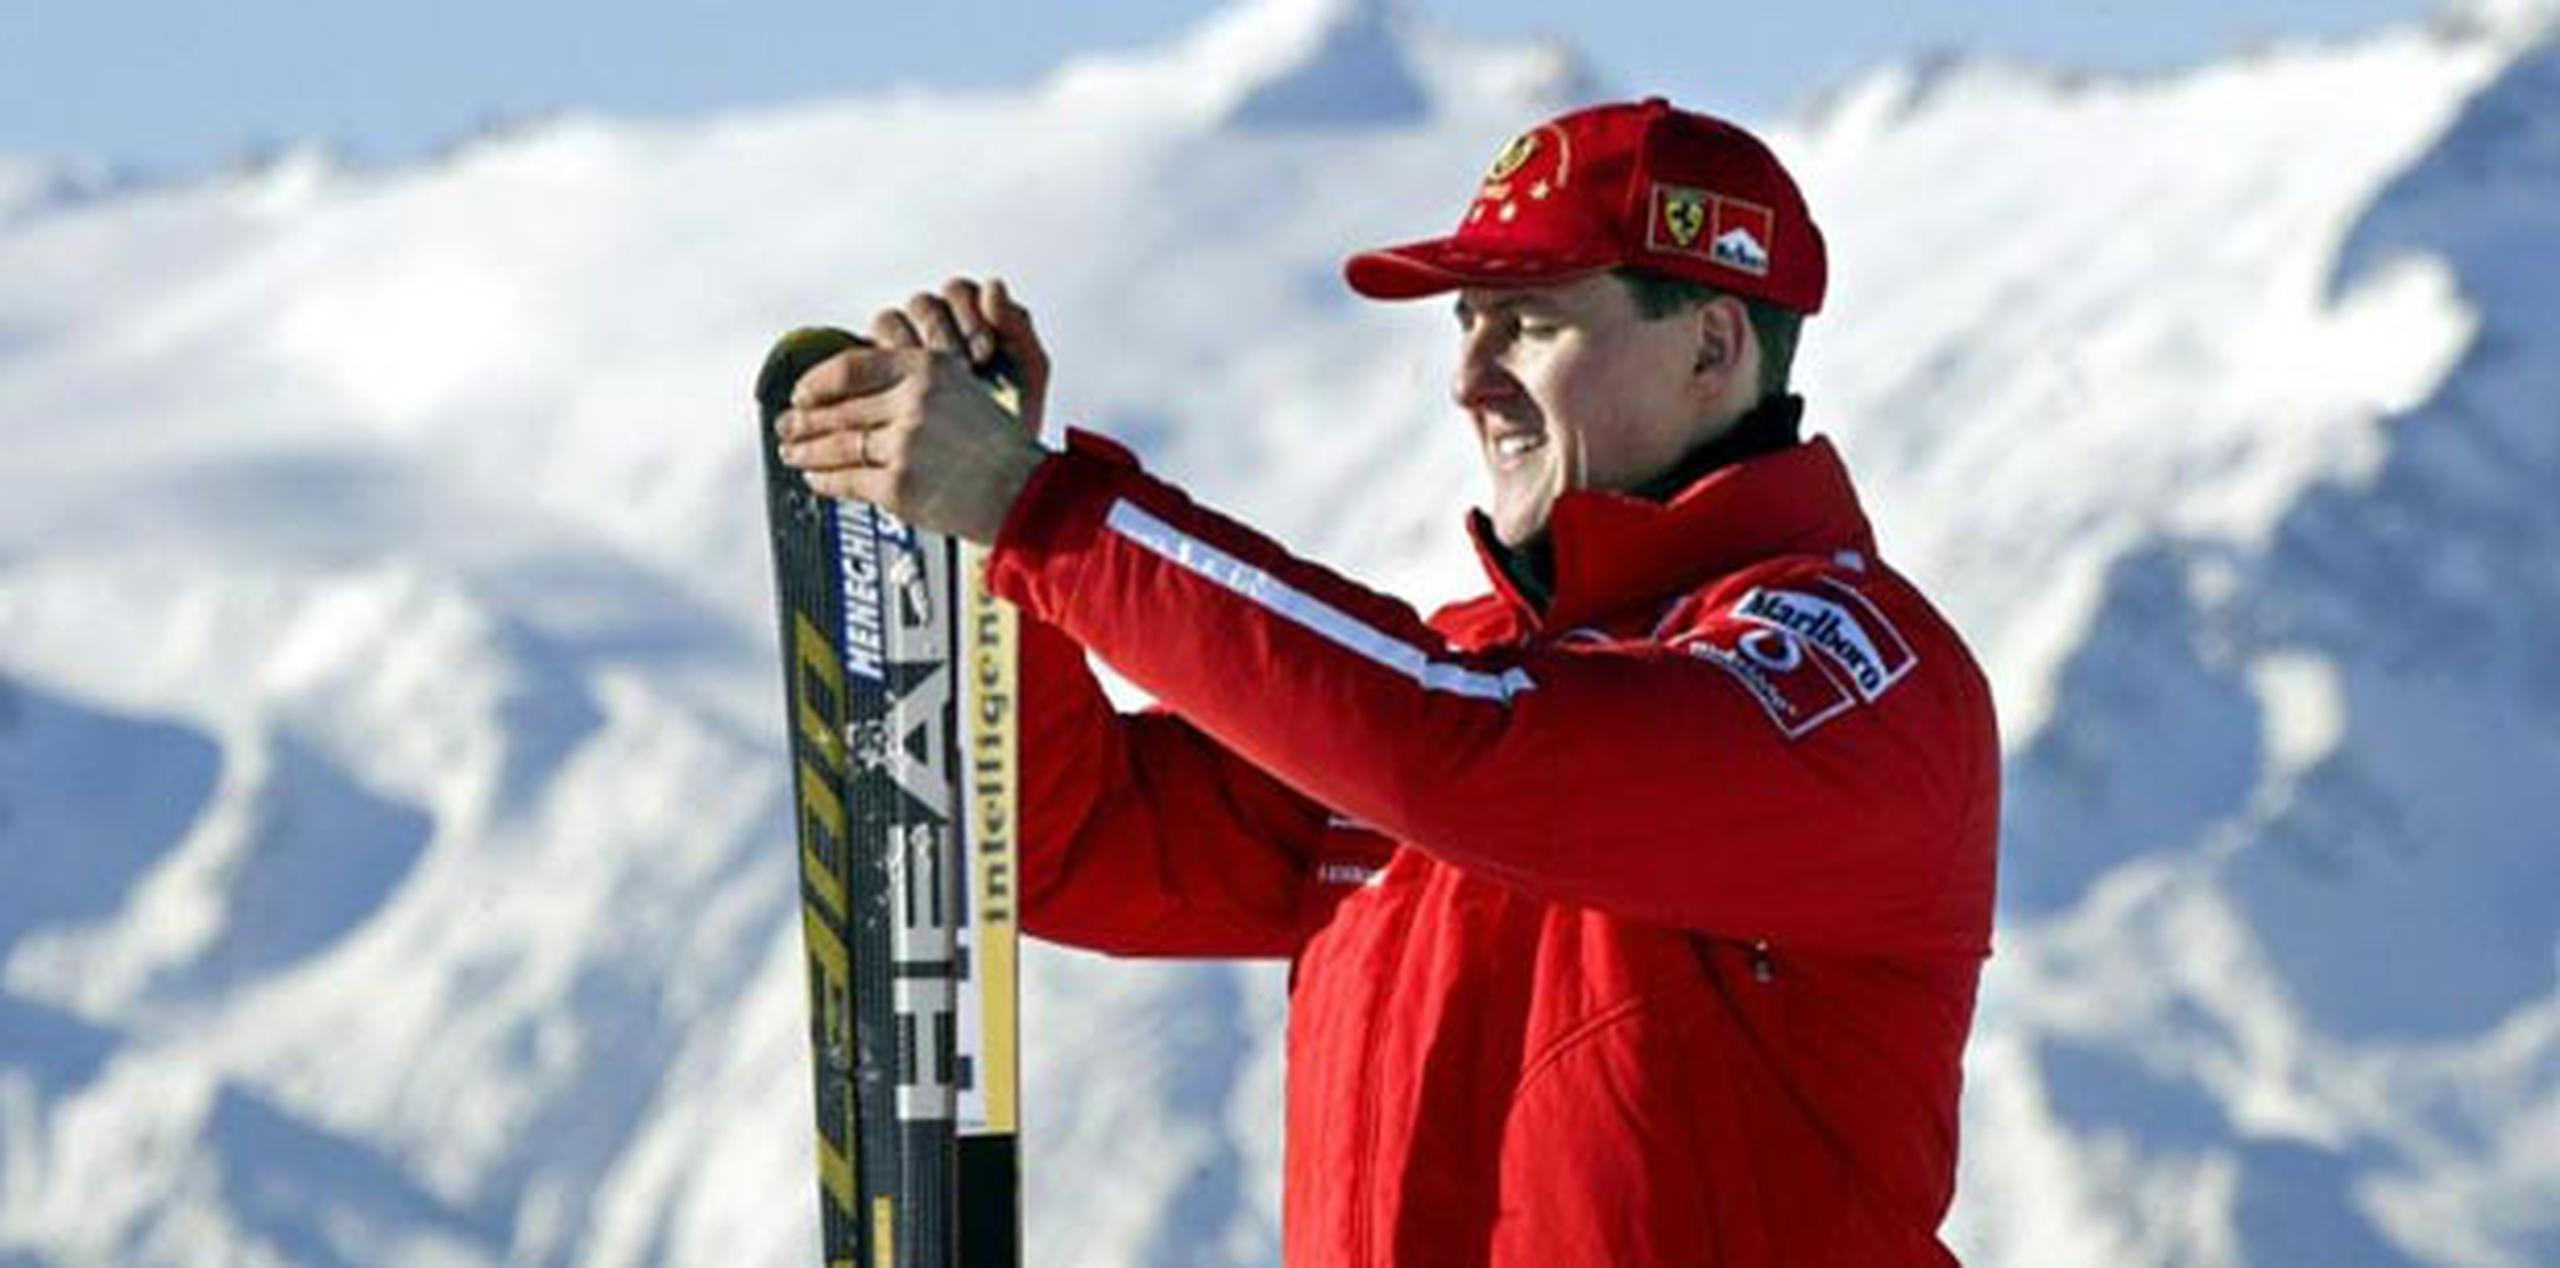 Se alega que la vida de Schumacher, quien tiene 44 años, no está en peligro. (Archivo)